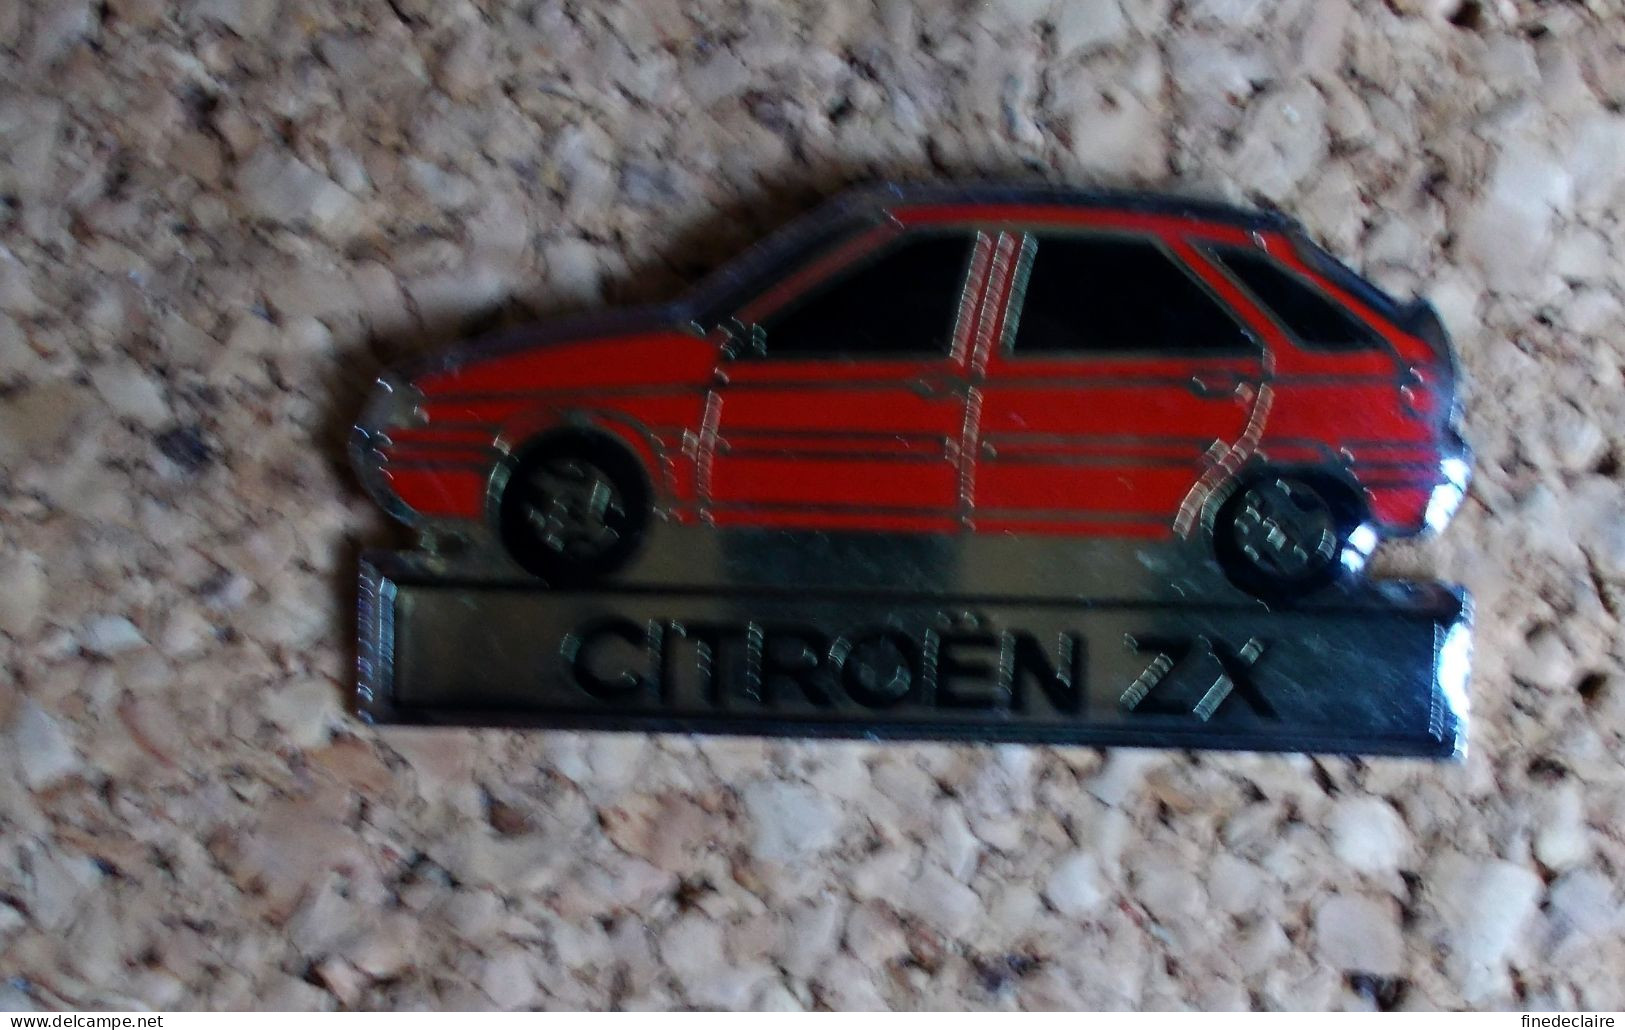 Pin's - Citroën ZX - Modèle Avec Résine - Citroën